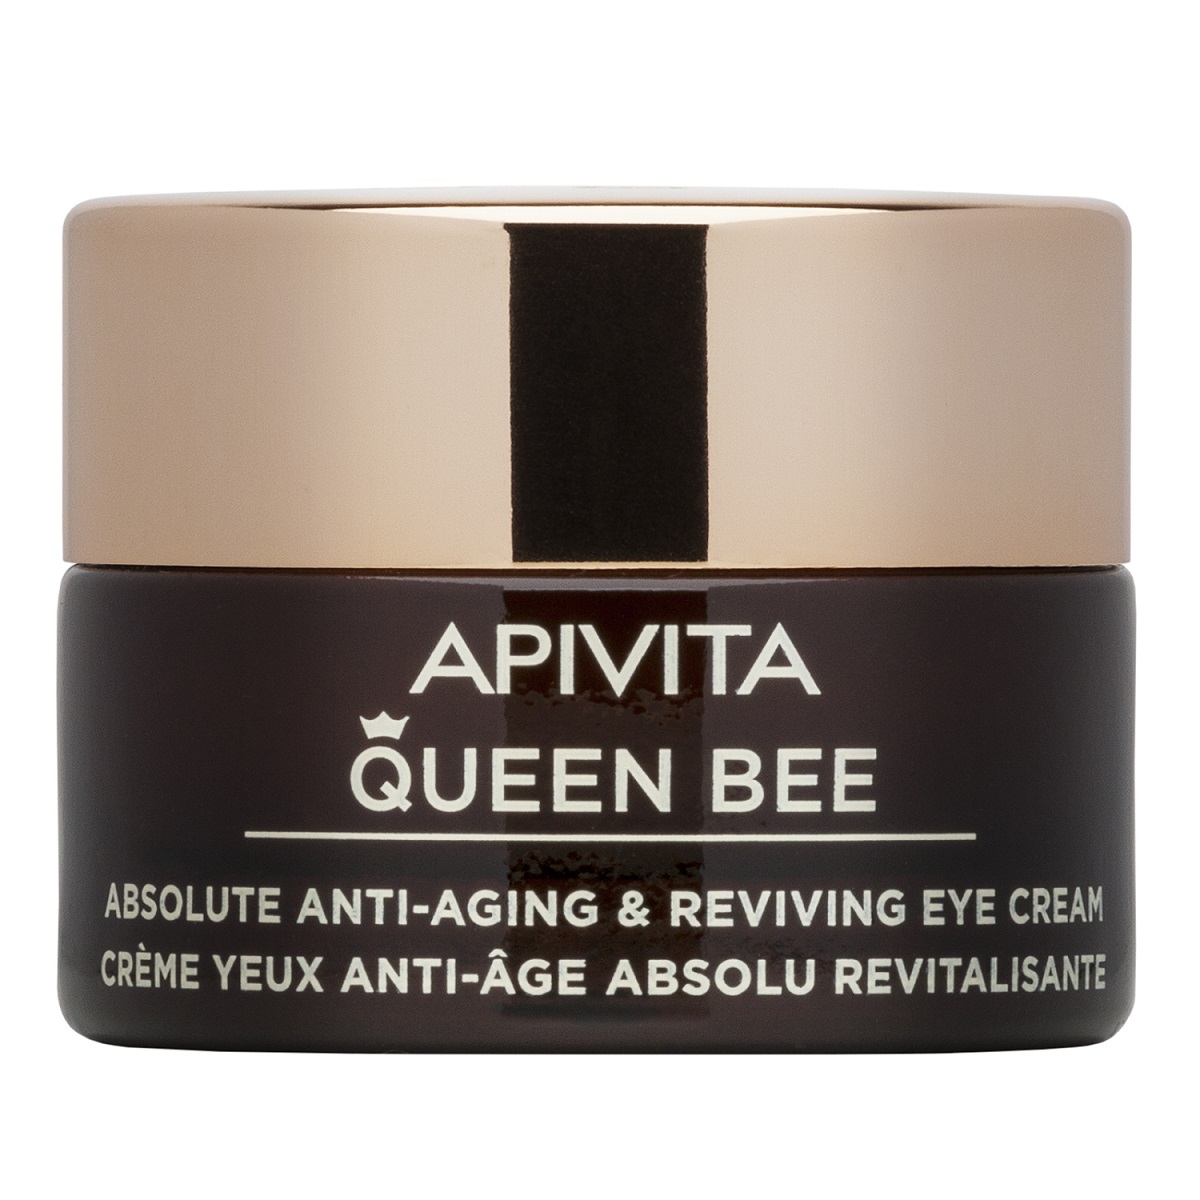 крем для кожи вокруг глаз apivita queen bee 15 мл Apivita Комплексный антивозрастной восстанавливающий крем для кожи контура глаз, 15 мл (Apivita, Queen Bee)